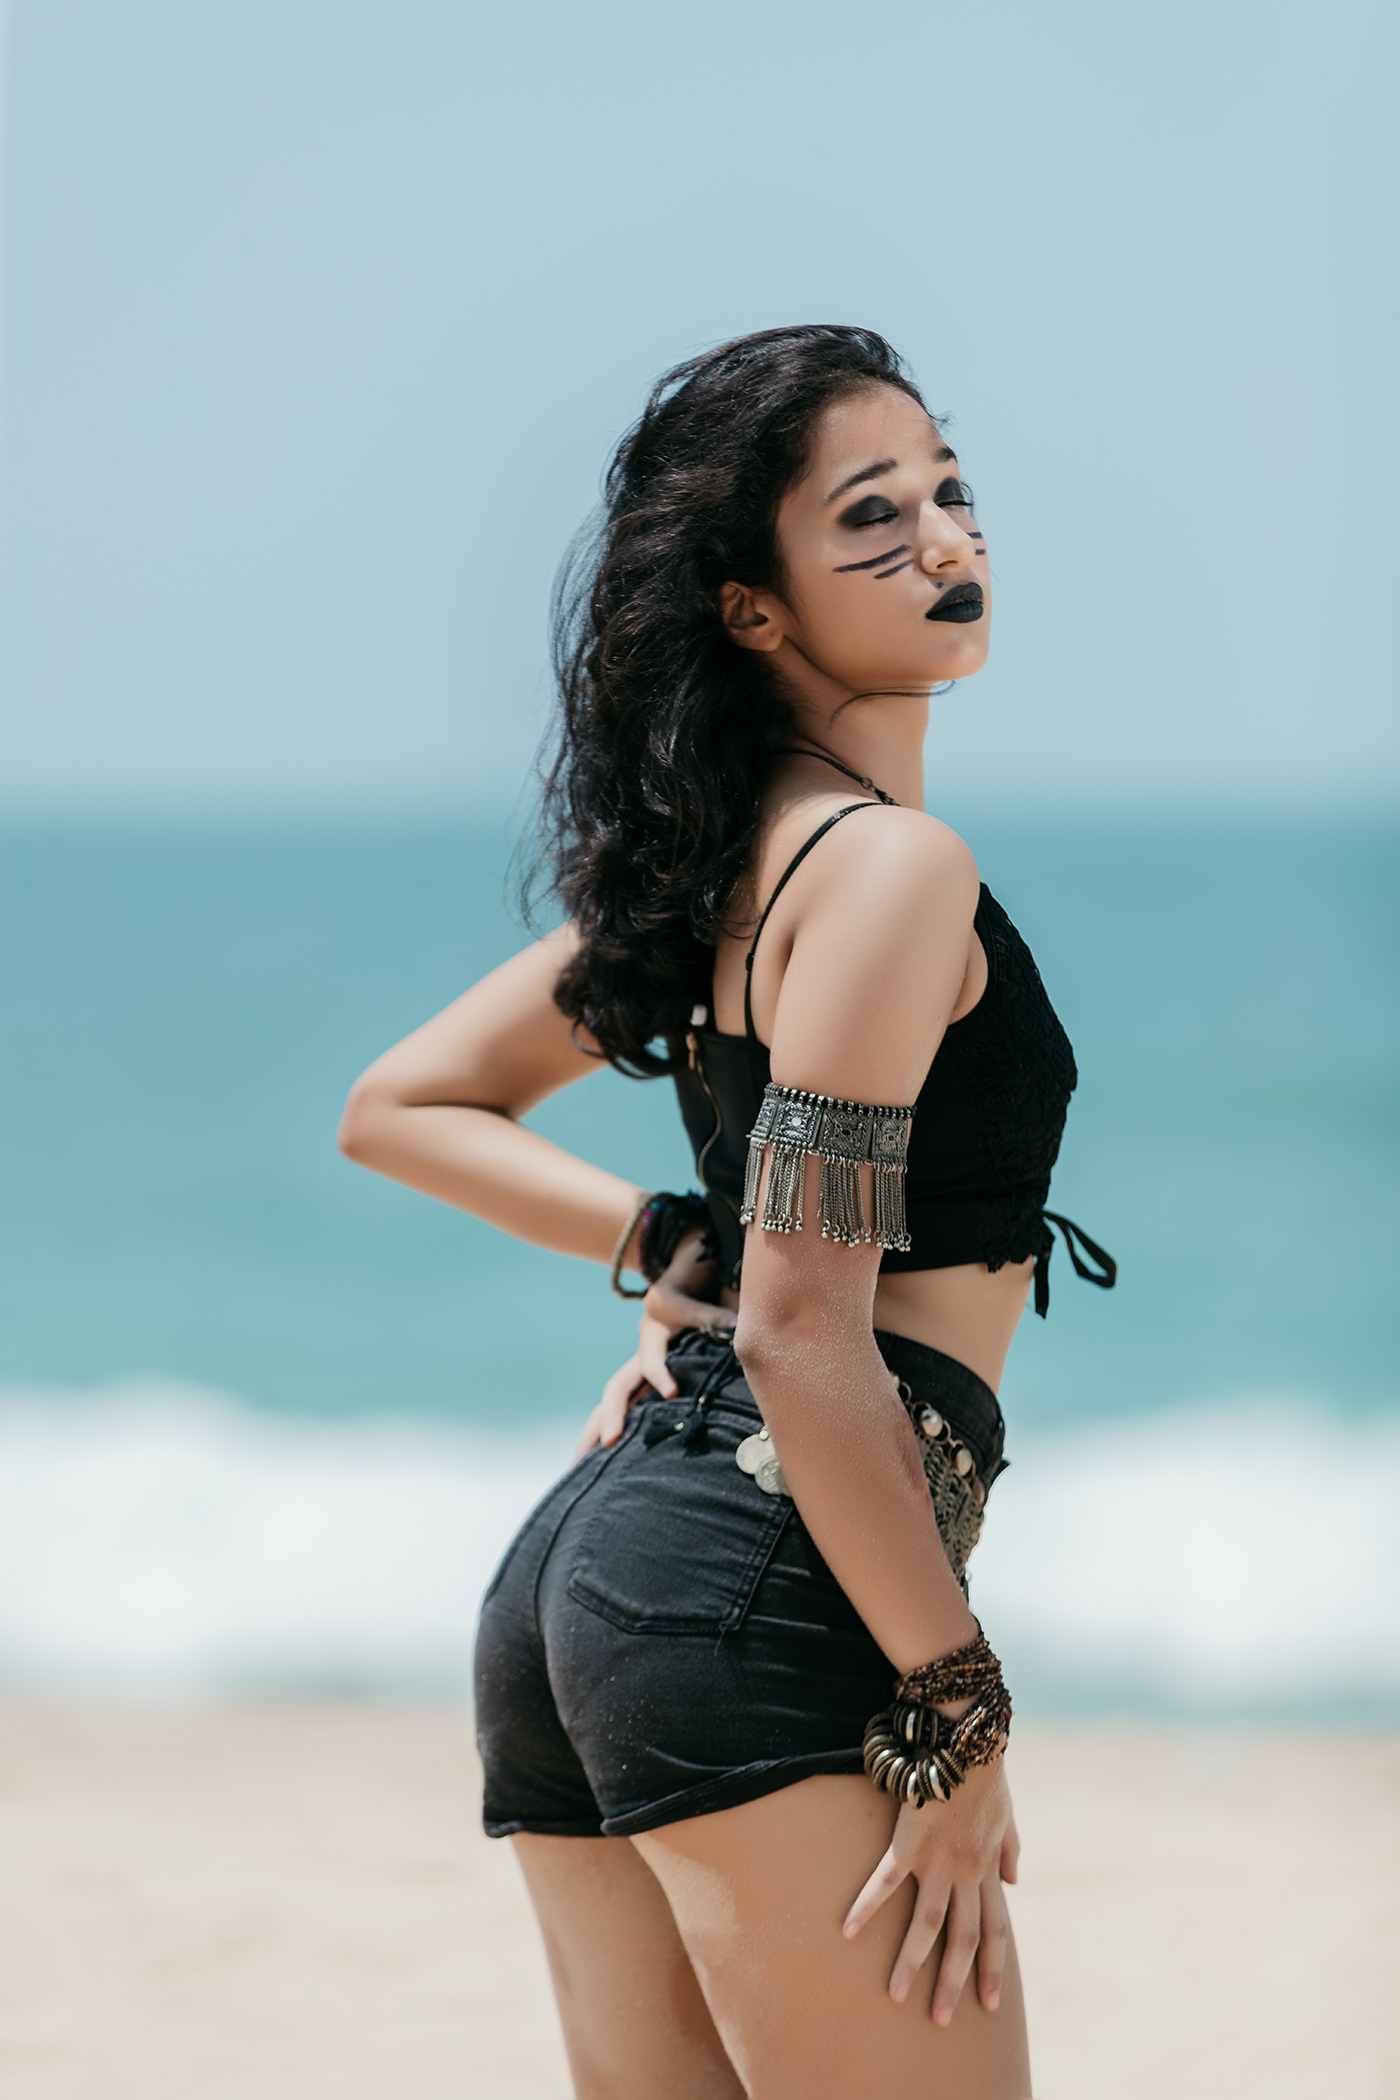 beach butt curves Denim model photographer portrait sexy shorts teen